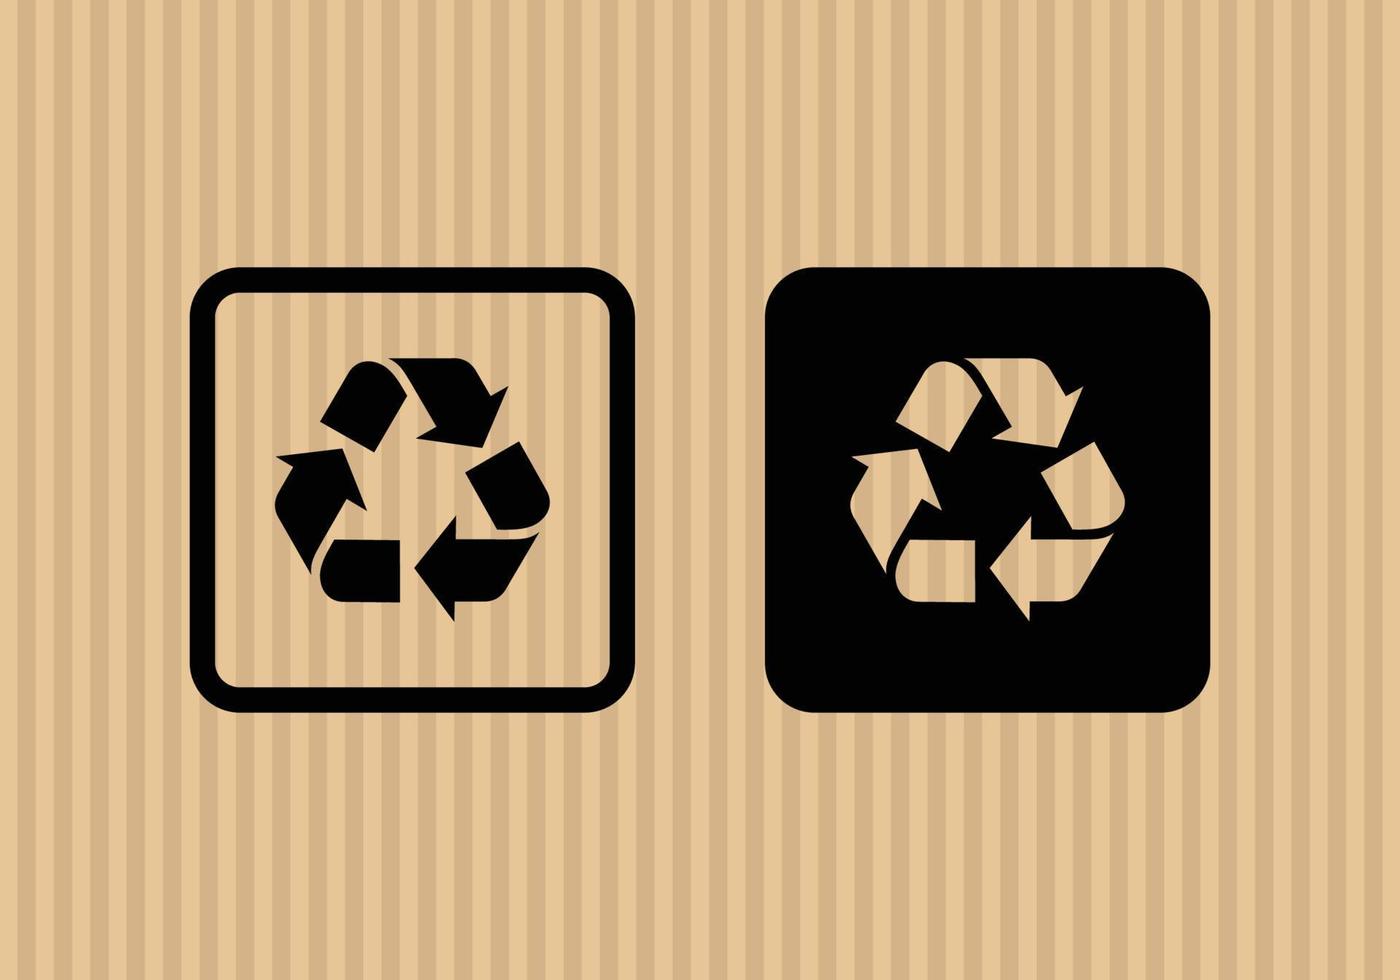 ilustração vetorial de ícone plano simples reciclado com fundo de textura de papelão vetor